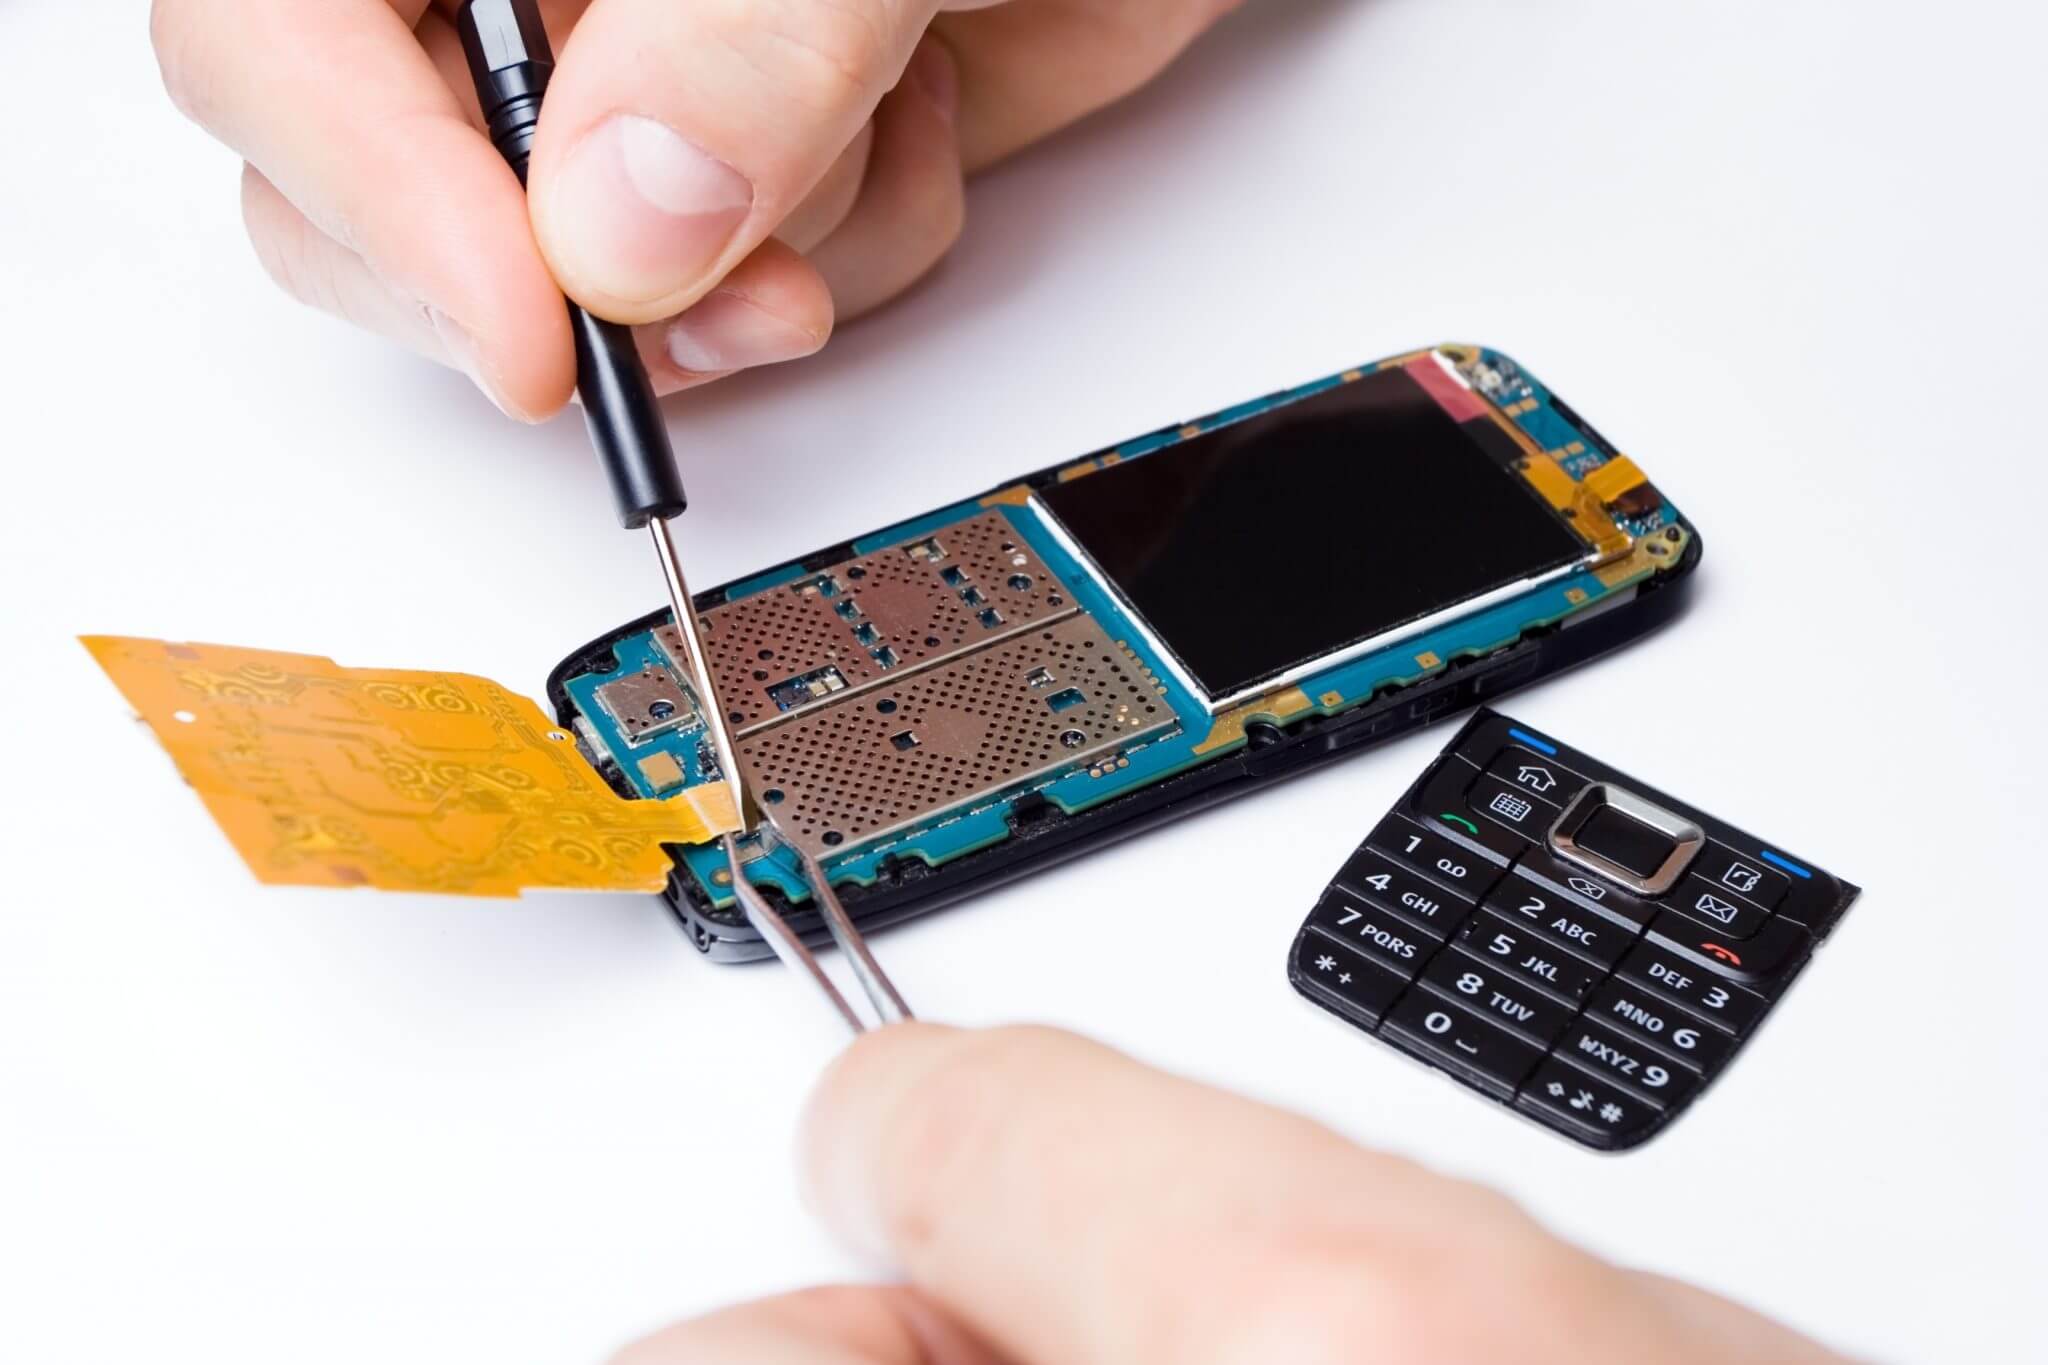 Repairing A Phone